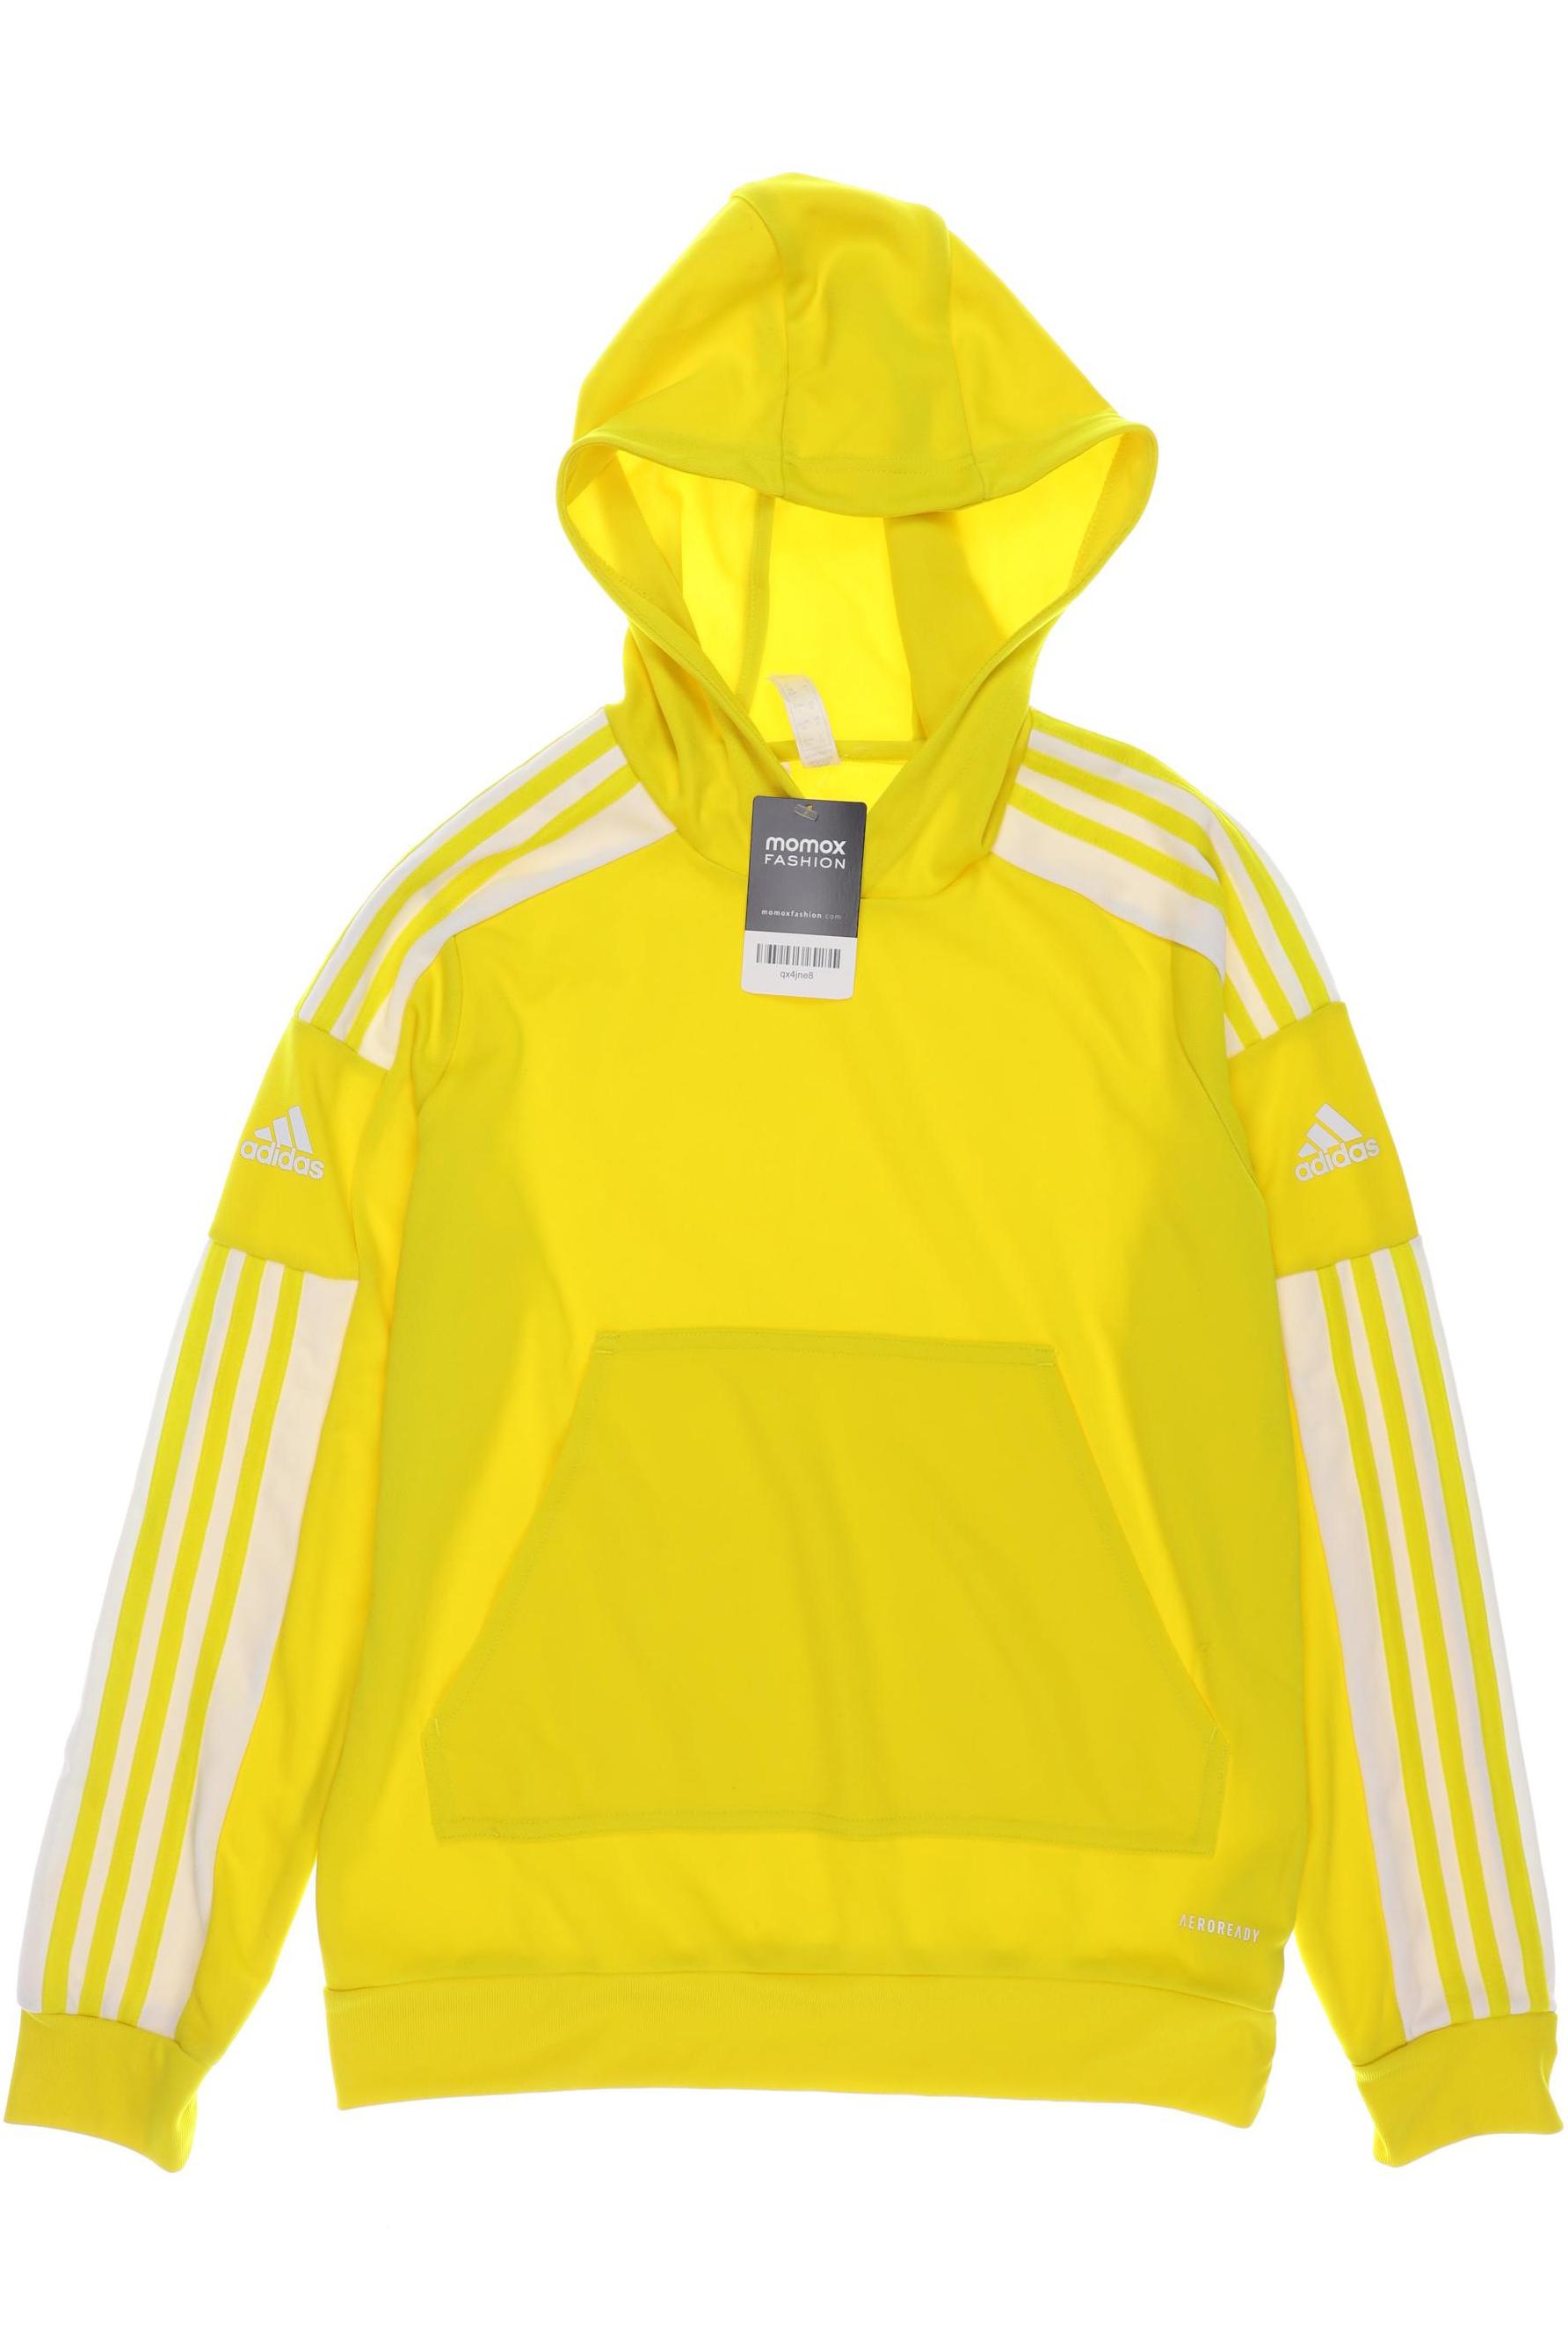 adidas Jungen Hoodies & Sweater, gelb von Adidas